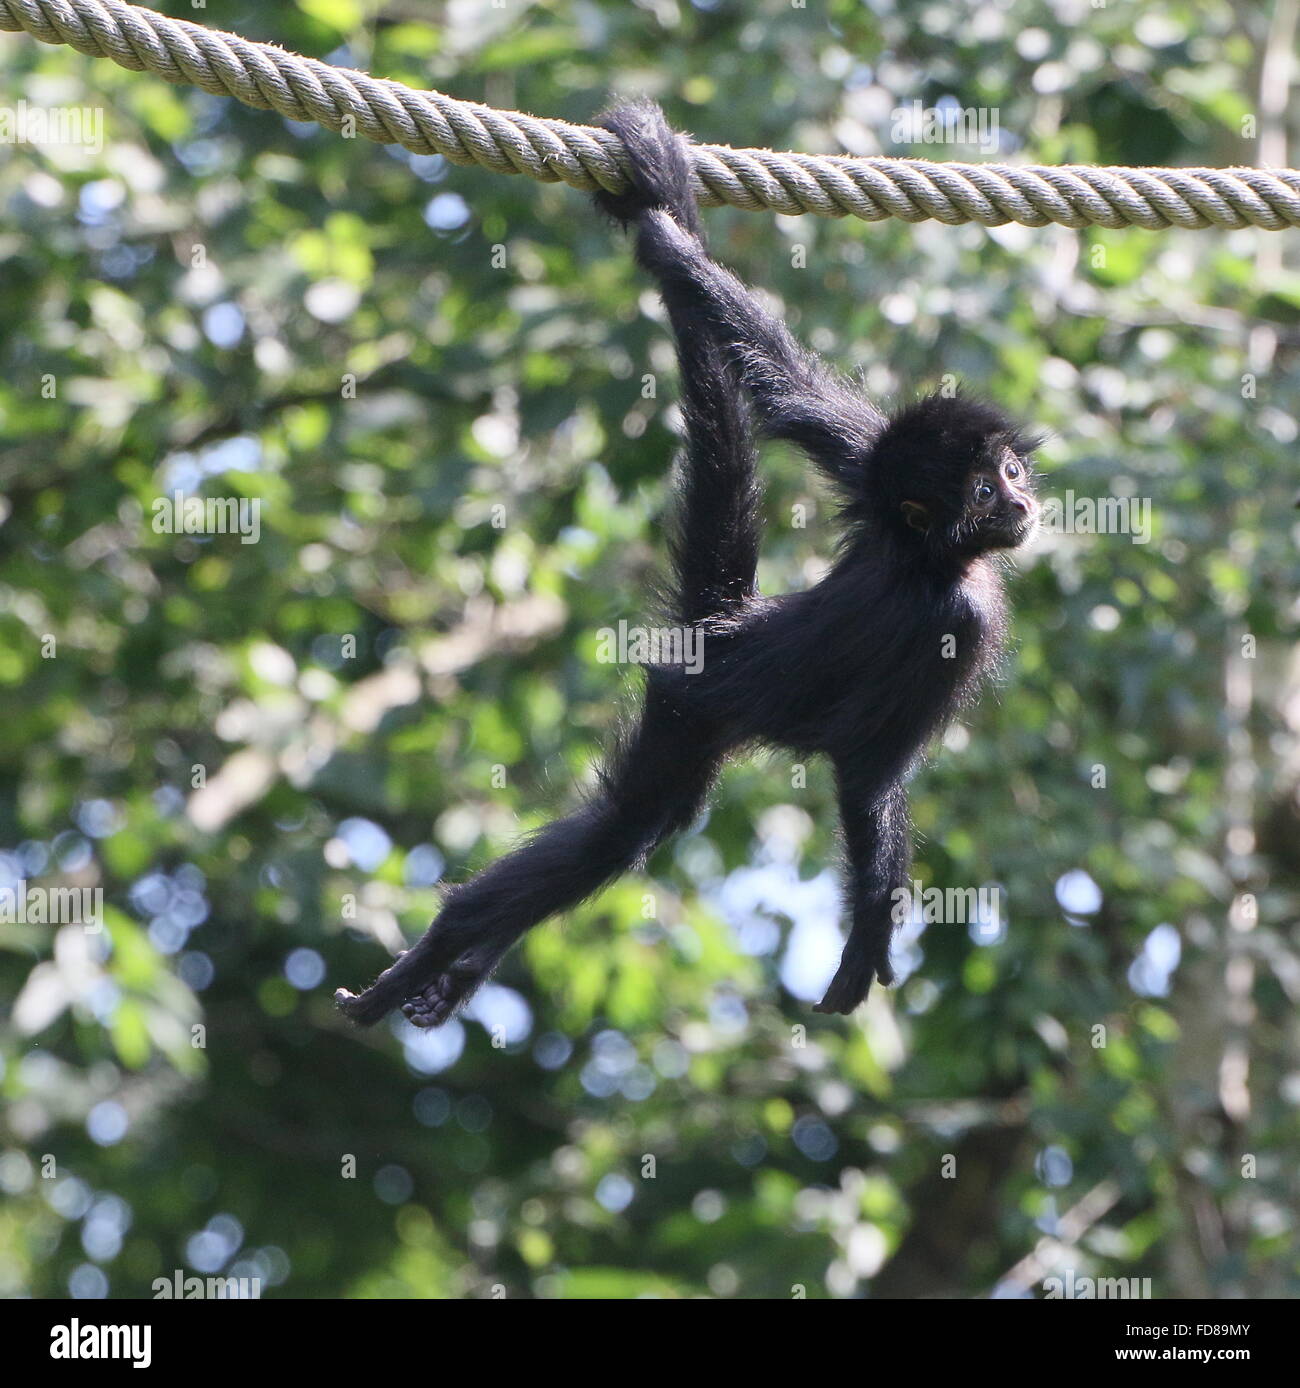 Menores de cabeza negra colombiana mono araña (Ateles fusciceps robustus) con cola prensil, pendiendo de una cuerda en un zoológico Foto de stock